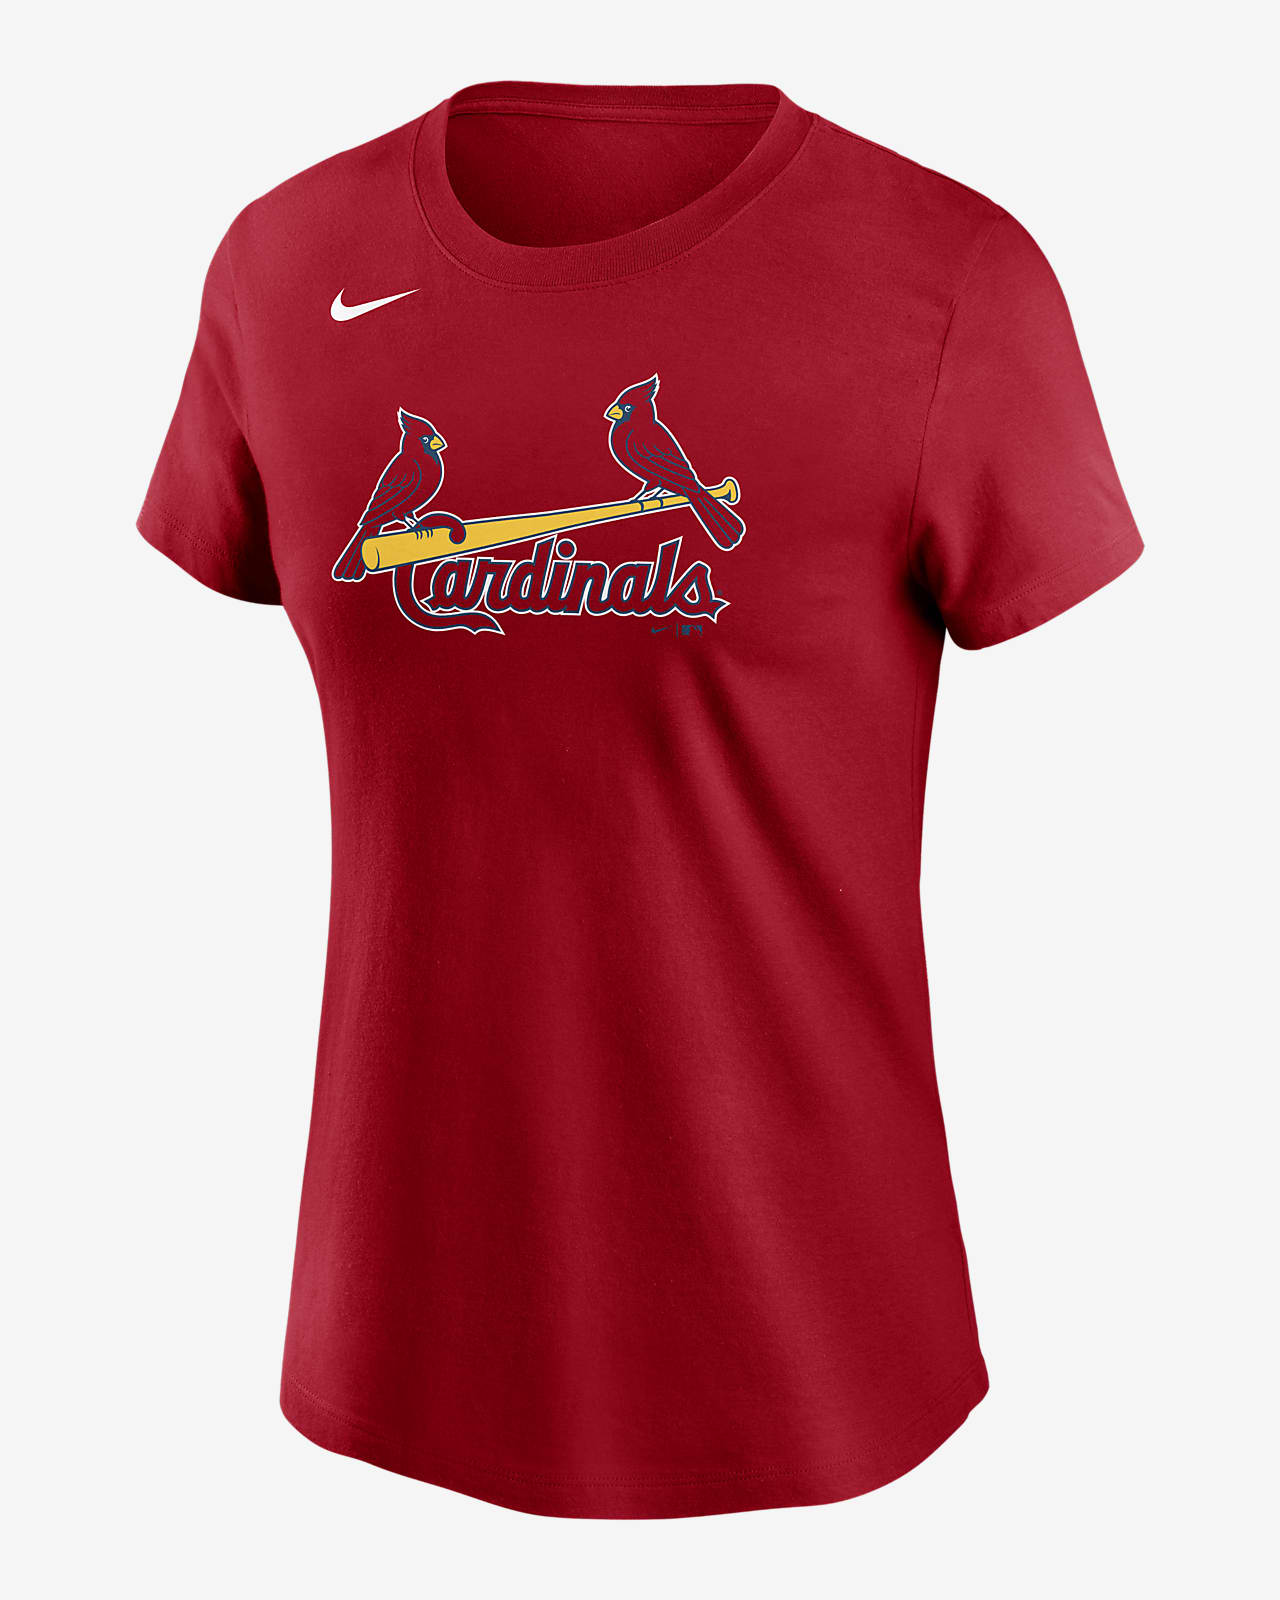 st louis cardinals t shirts women's